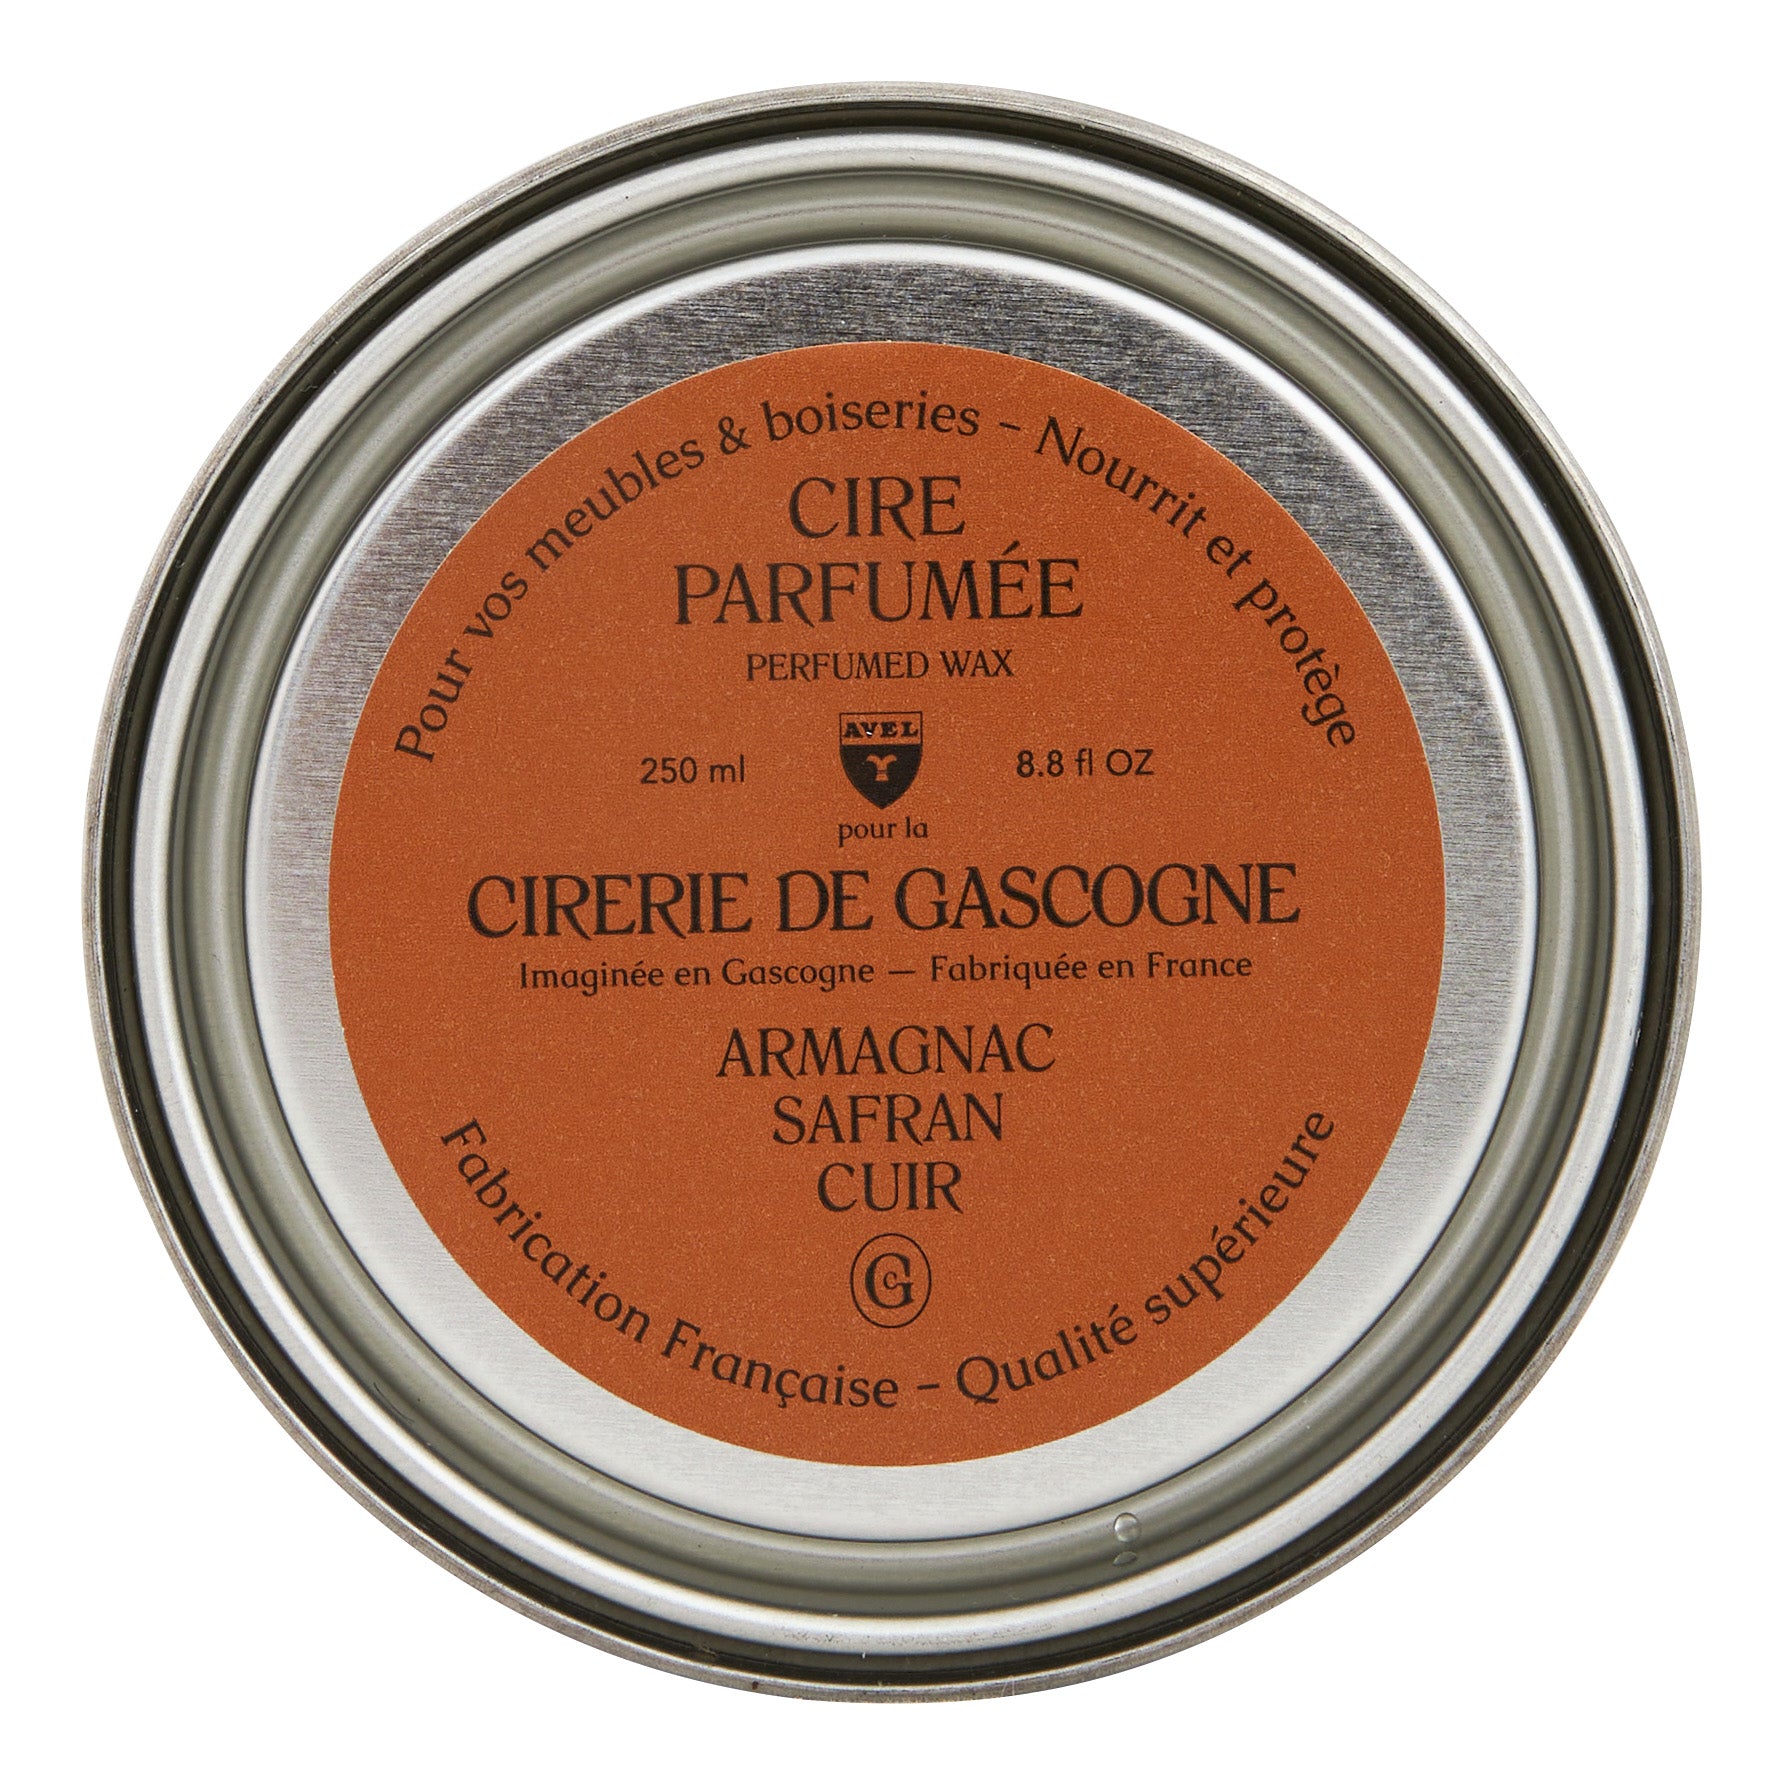 Cirerie de Gascogne Perfumed Furniture Wax